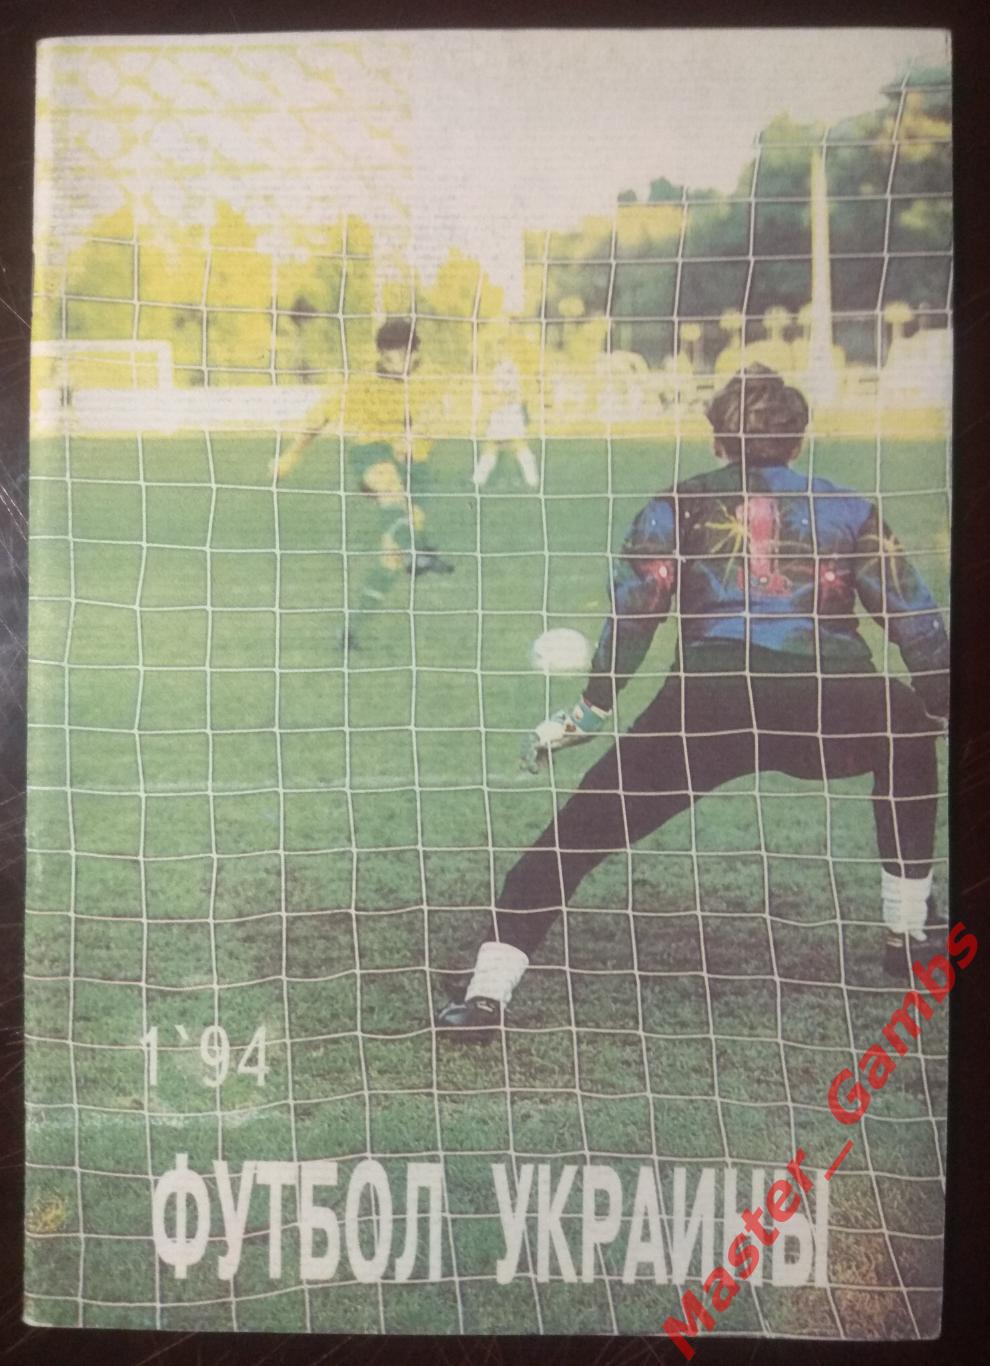 Журнал Футбол Украины #1 1994 Одесса